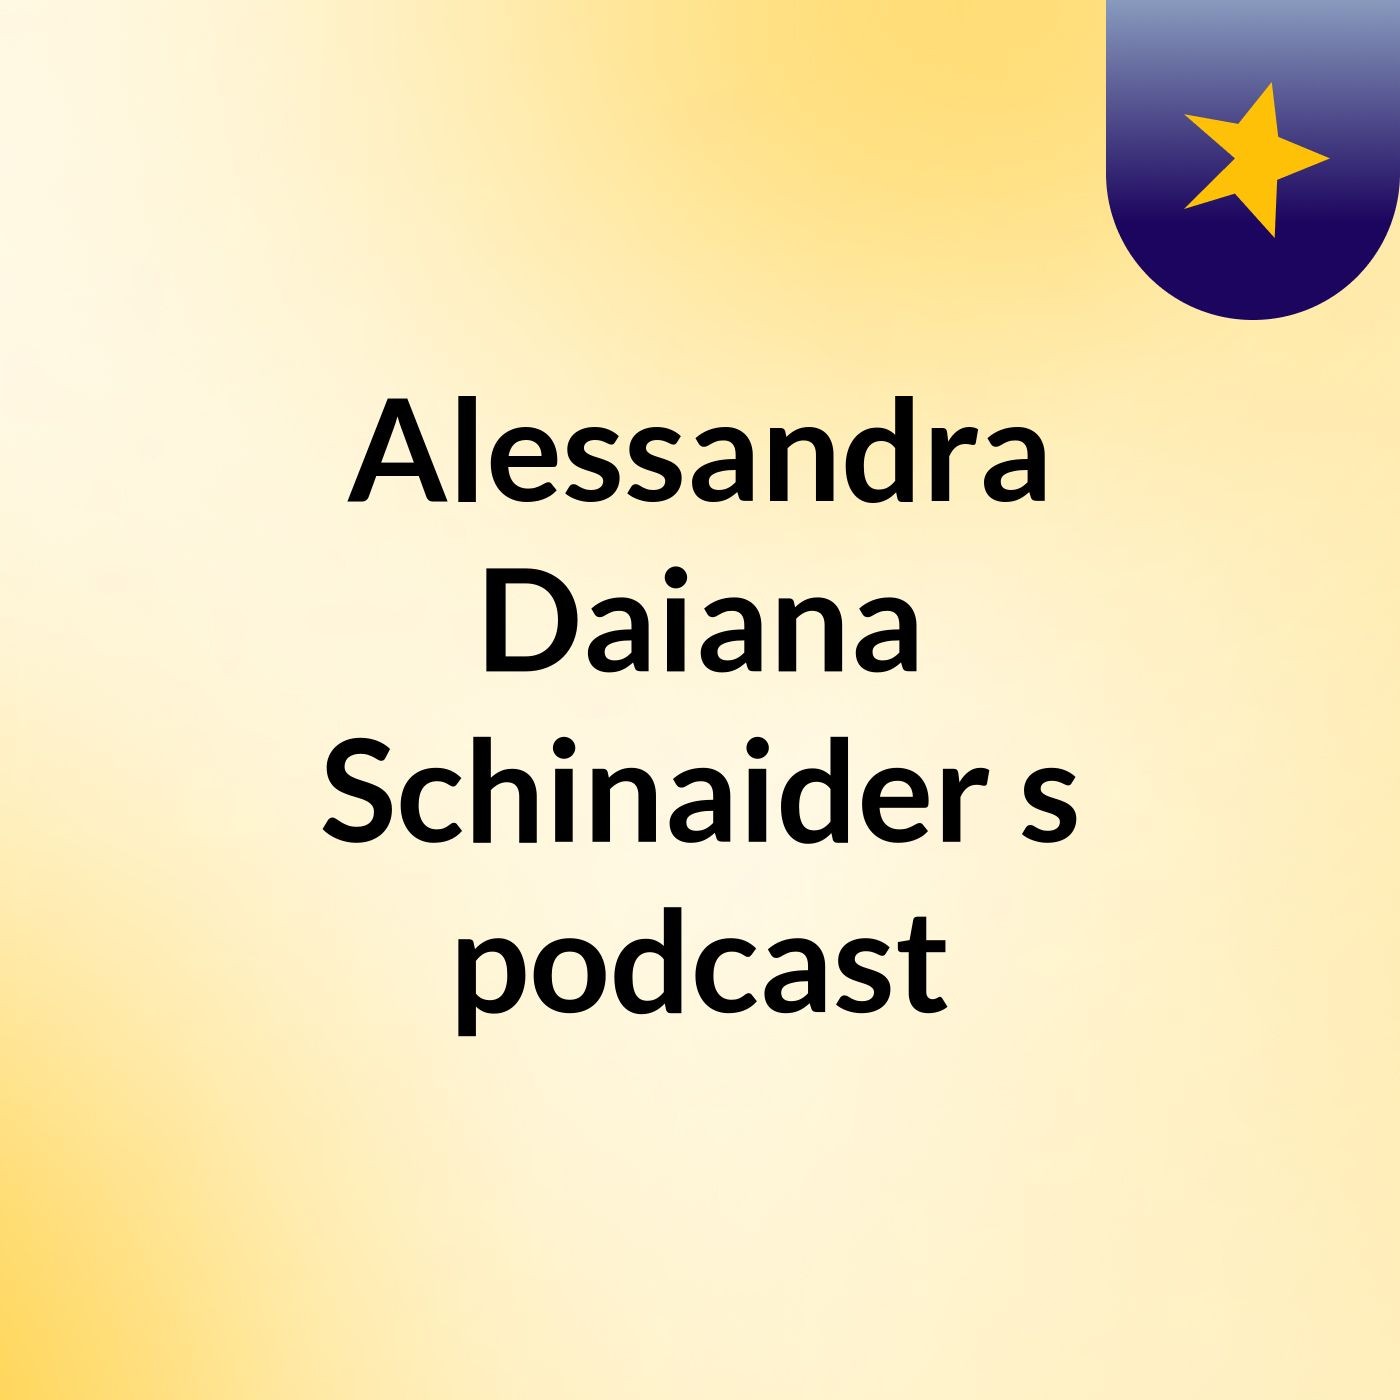 Alessandra Daiana Schinaider's podcast